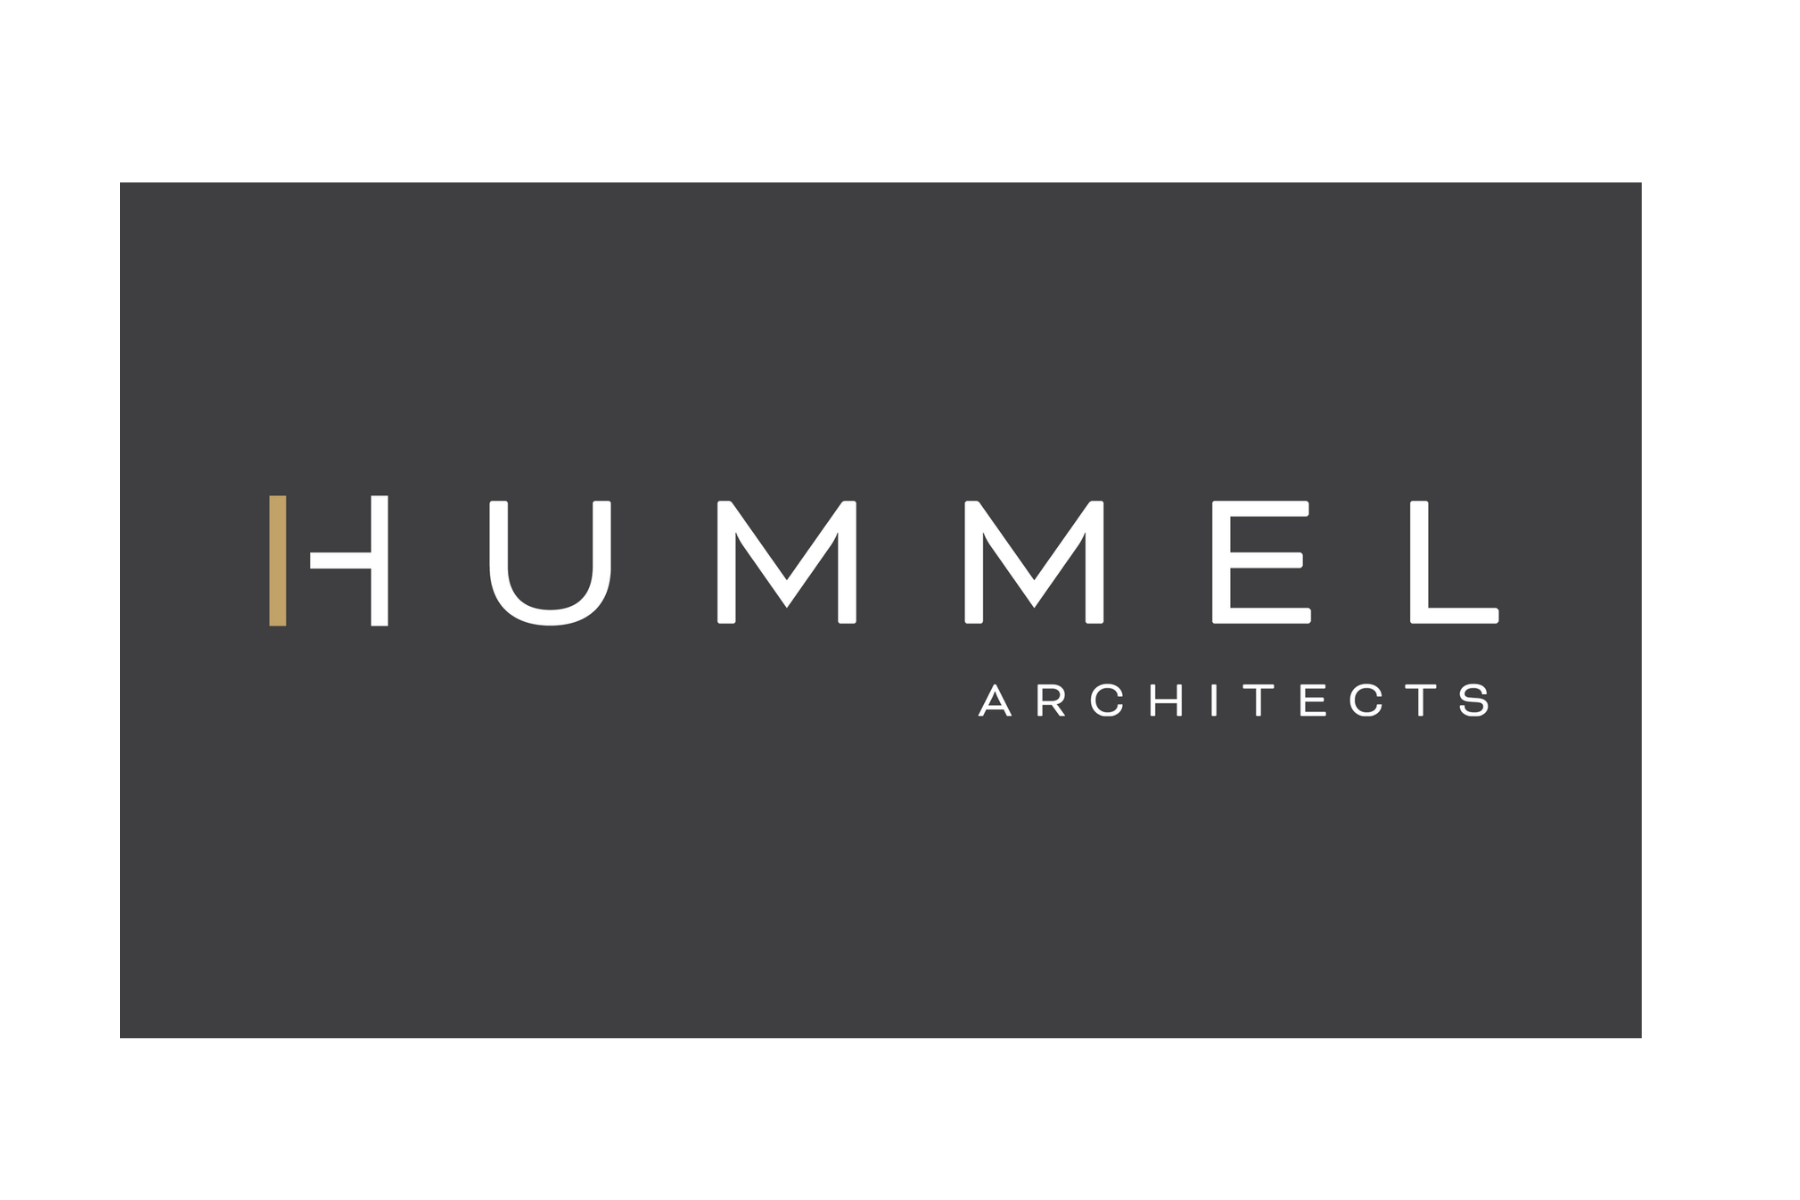 hummel logo sized for web banner.png